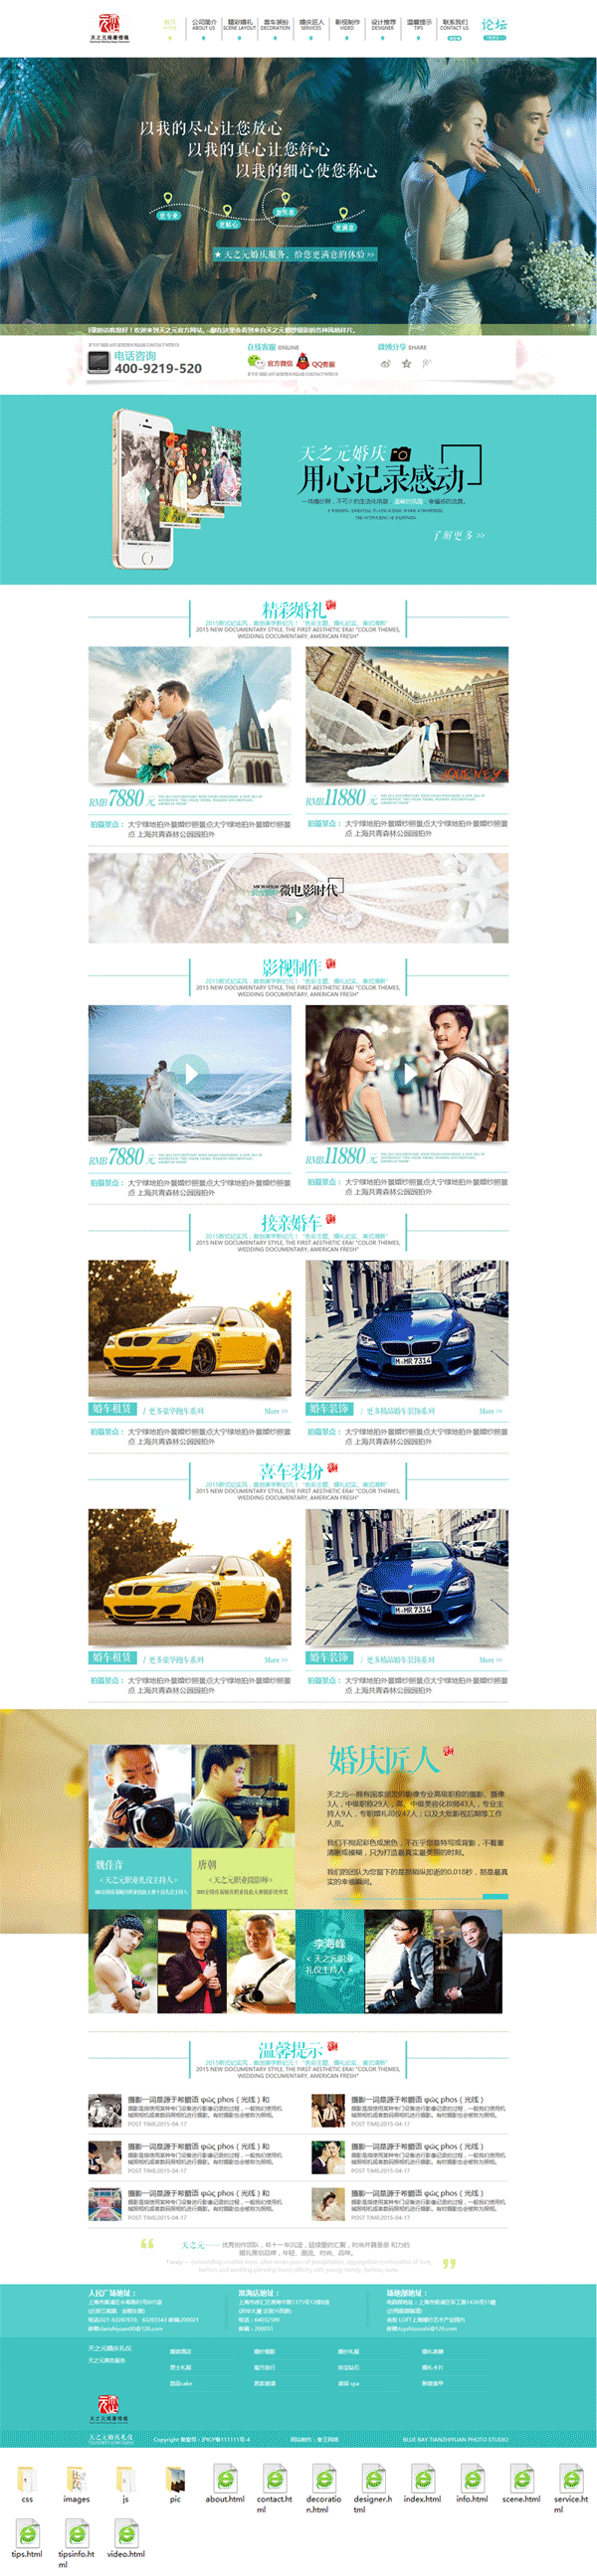 蓝色大气的婚礼婚庆公司网站模板html整站